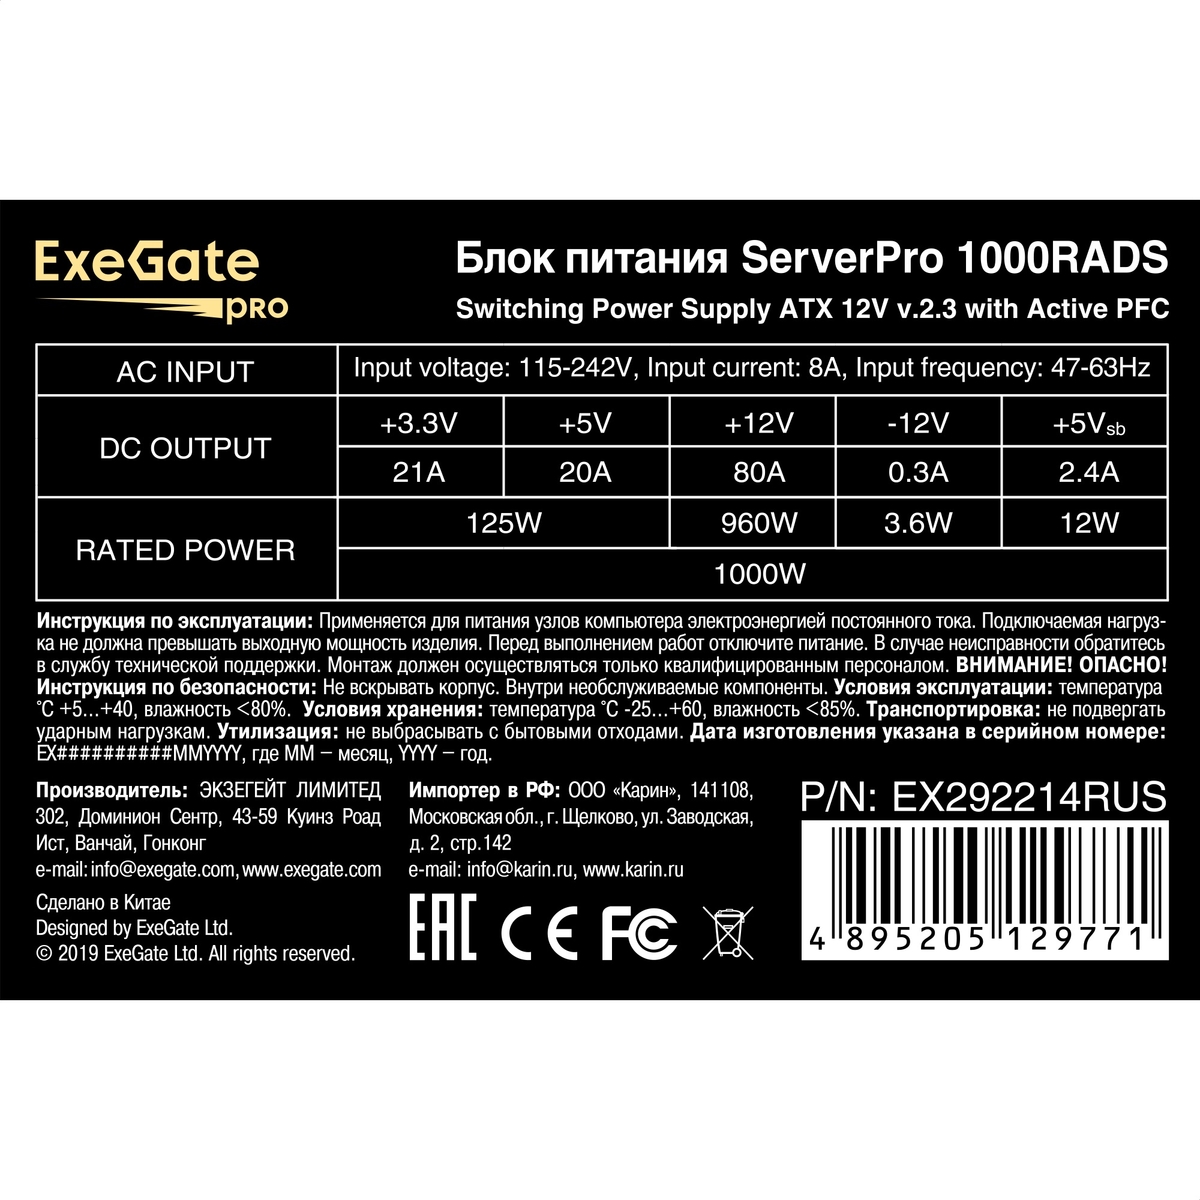 Серверный БП 1000W ExeGate ServerPRO-1000RADS